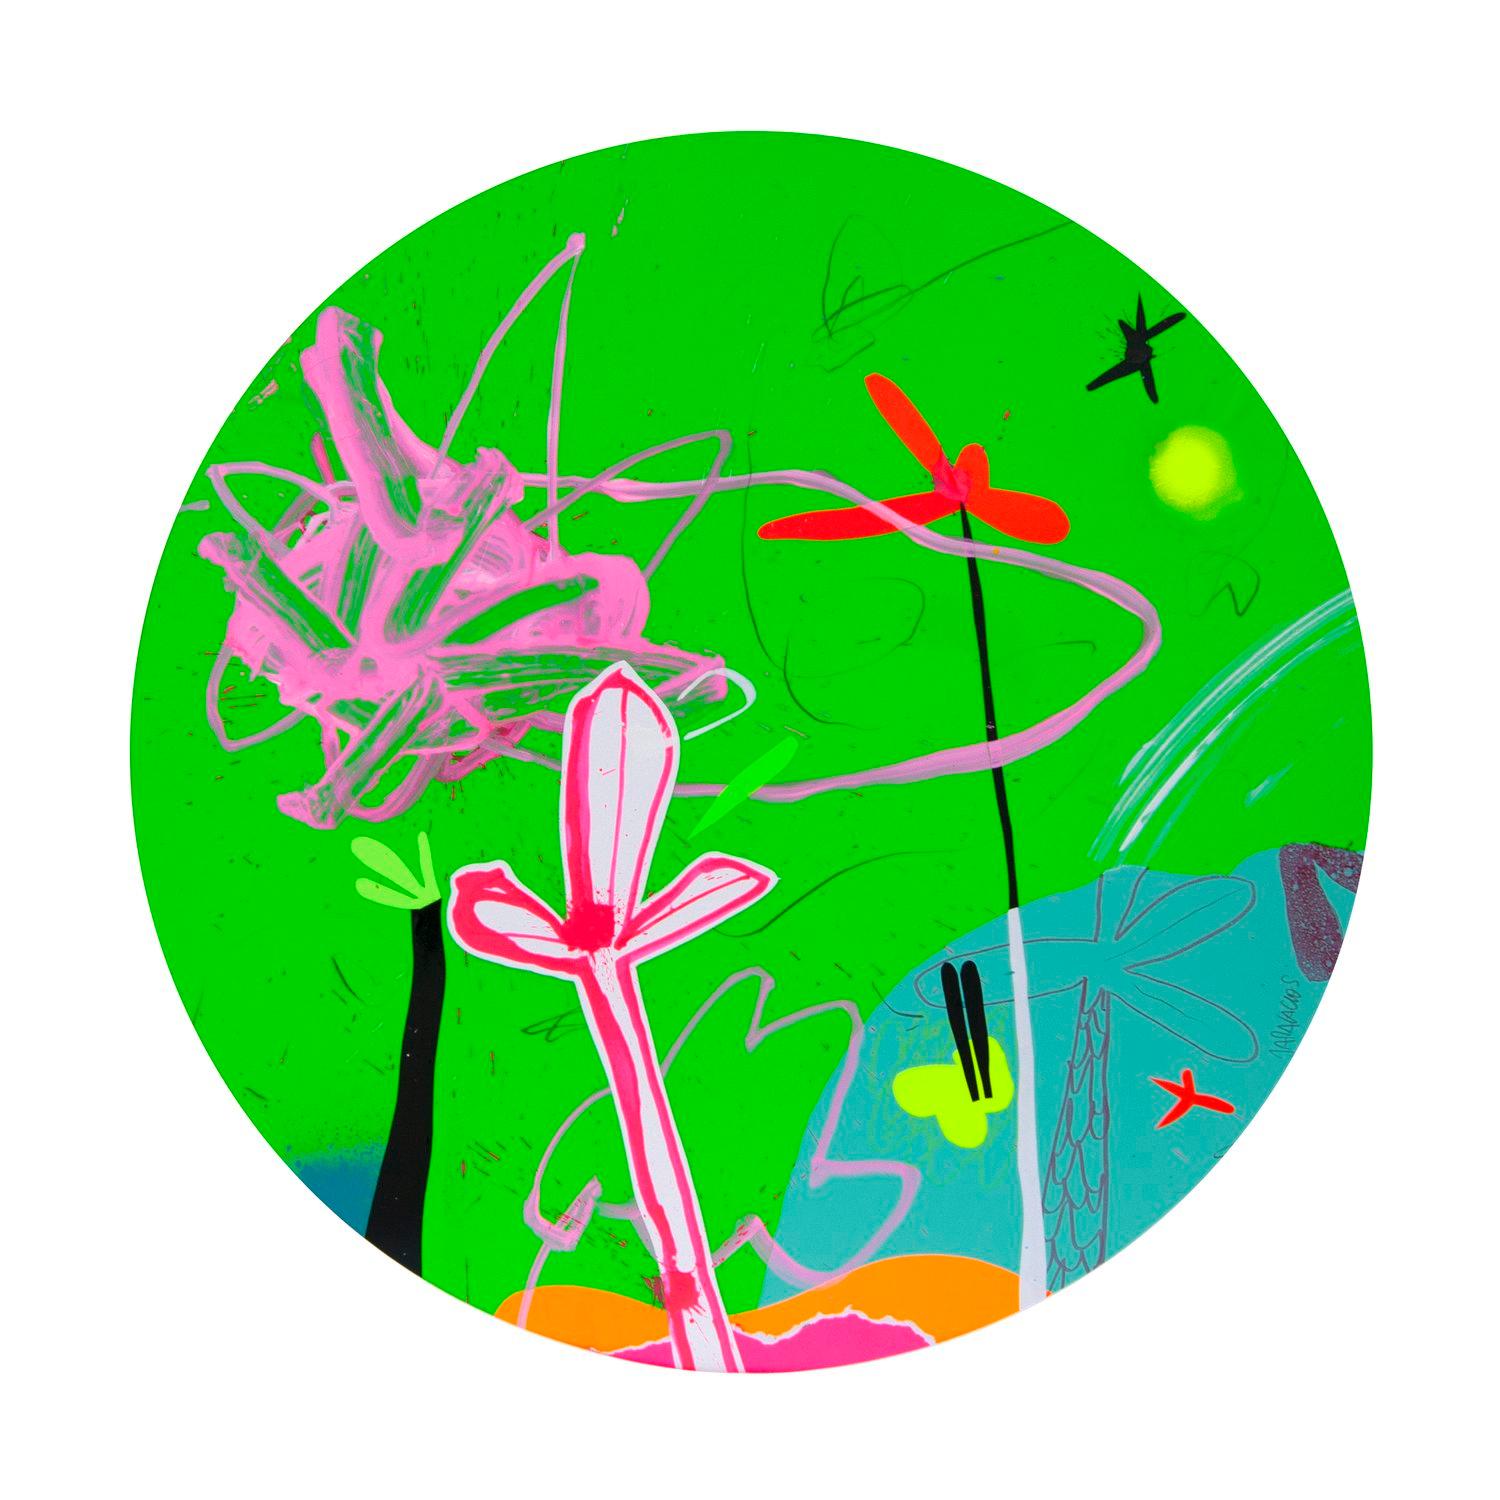 Auf diesem Original-Acrylbild auf Papier der Art Angler Gallery stellt Jose Palacios einen abstrakten Pop-Art-Stil dar. Er verwendet leuchtend pinke, weiße, grüne, schwarze und rote Formen, um seine Komposition aus "tropischen Formen" und Mustern zu